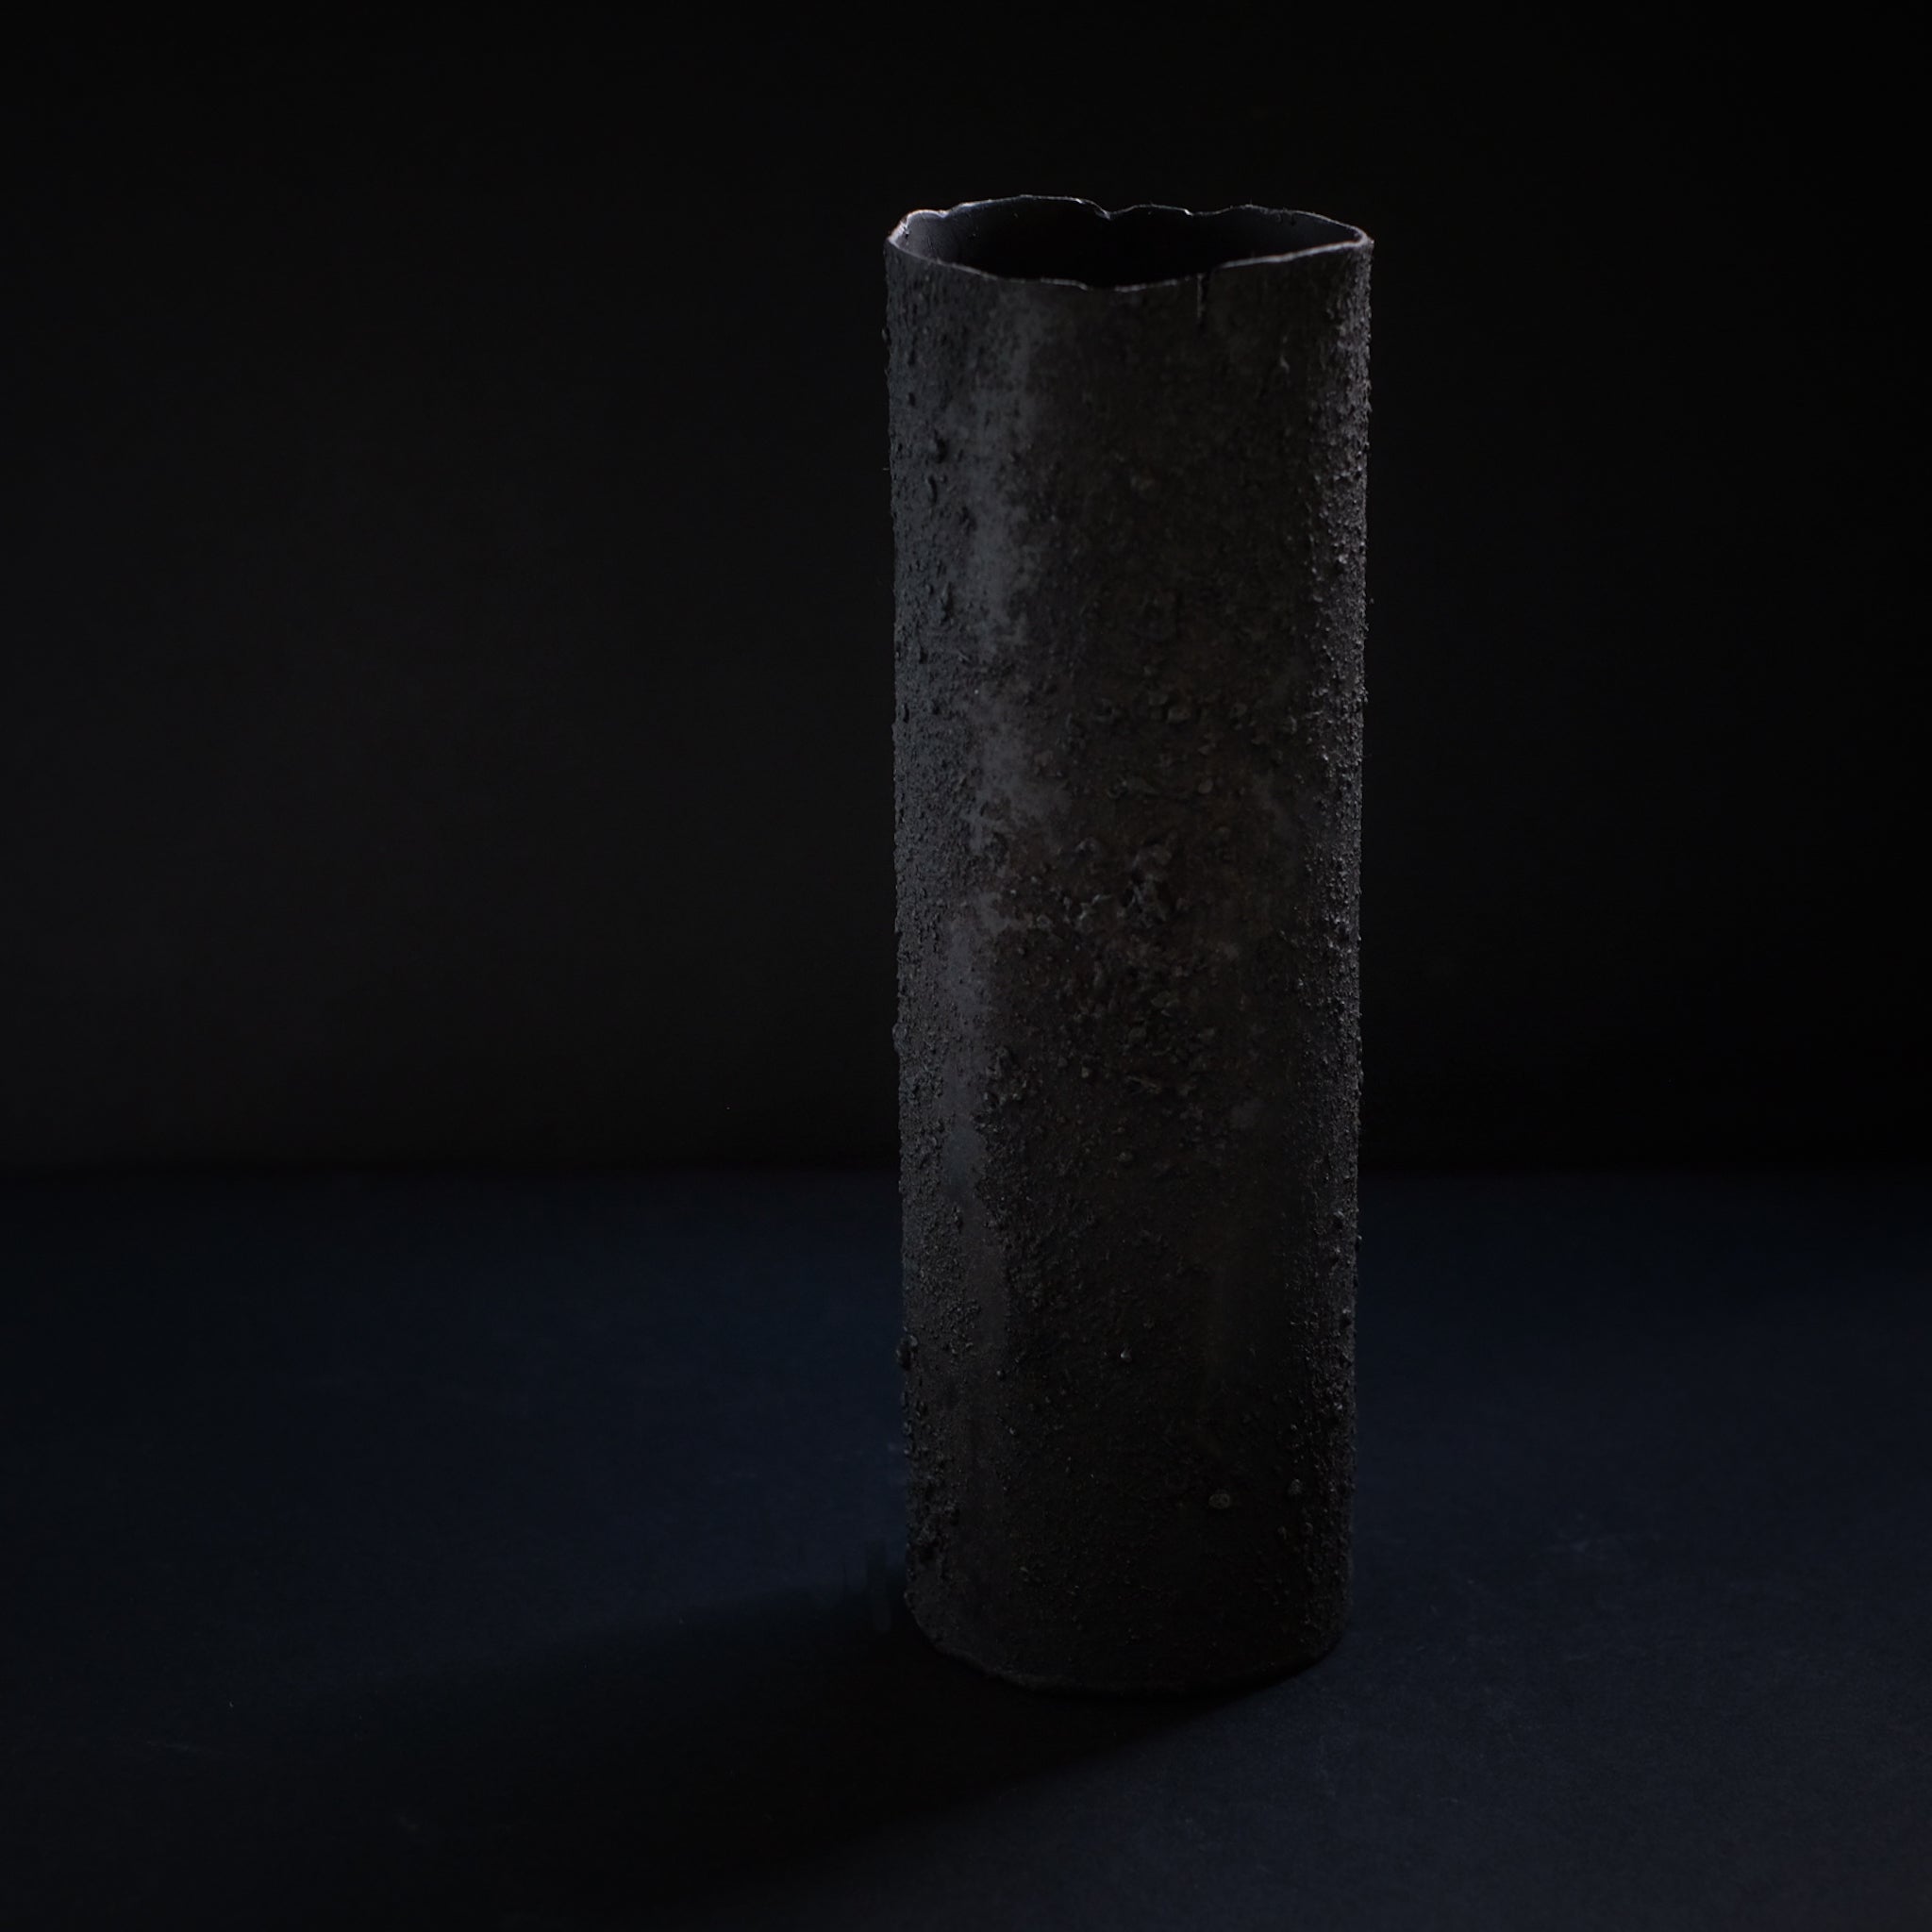 大山求  黒錆筒状花器  Motomu Oyama iron vase (VMO2B)